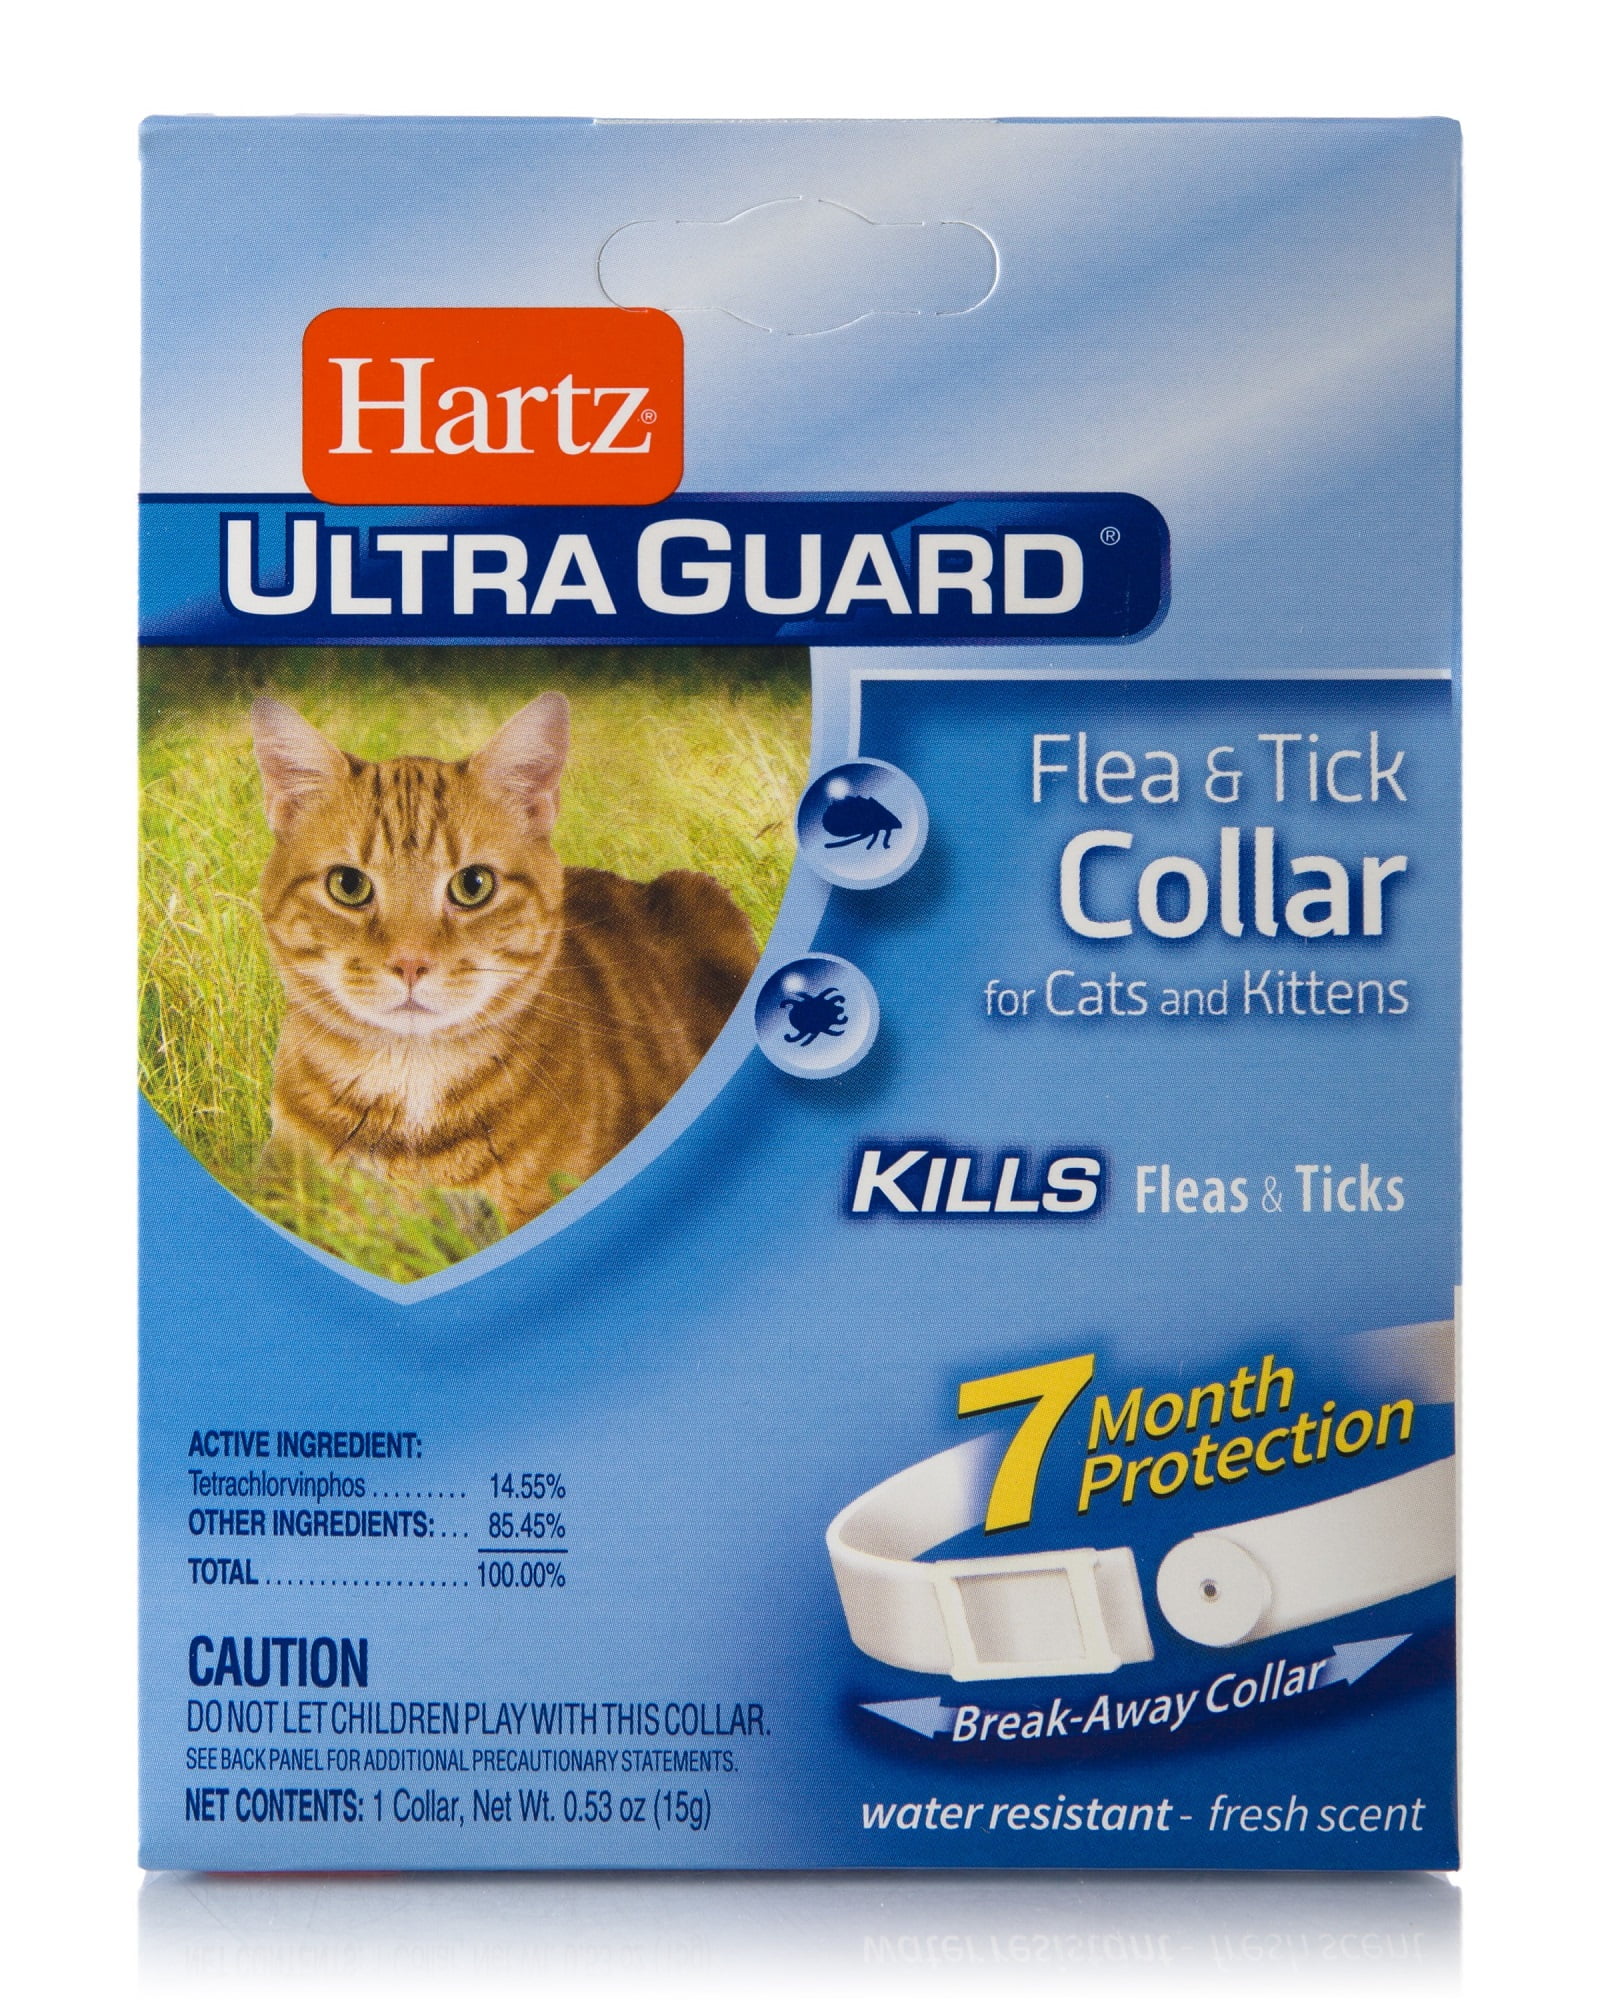 Hartz UltraGuard Flea & TIck Collar for Cats and Kittens